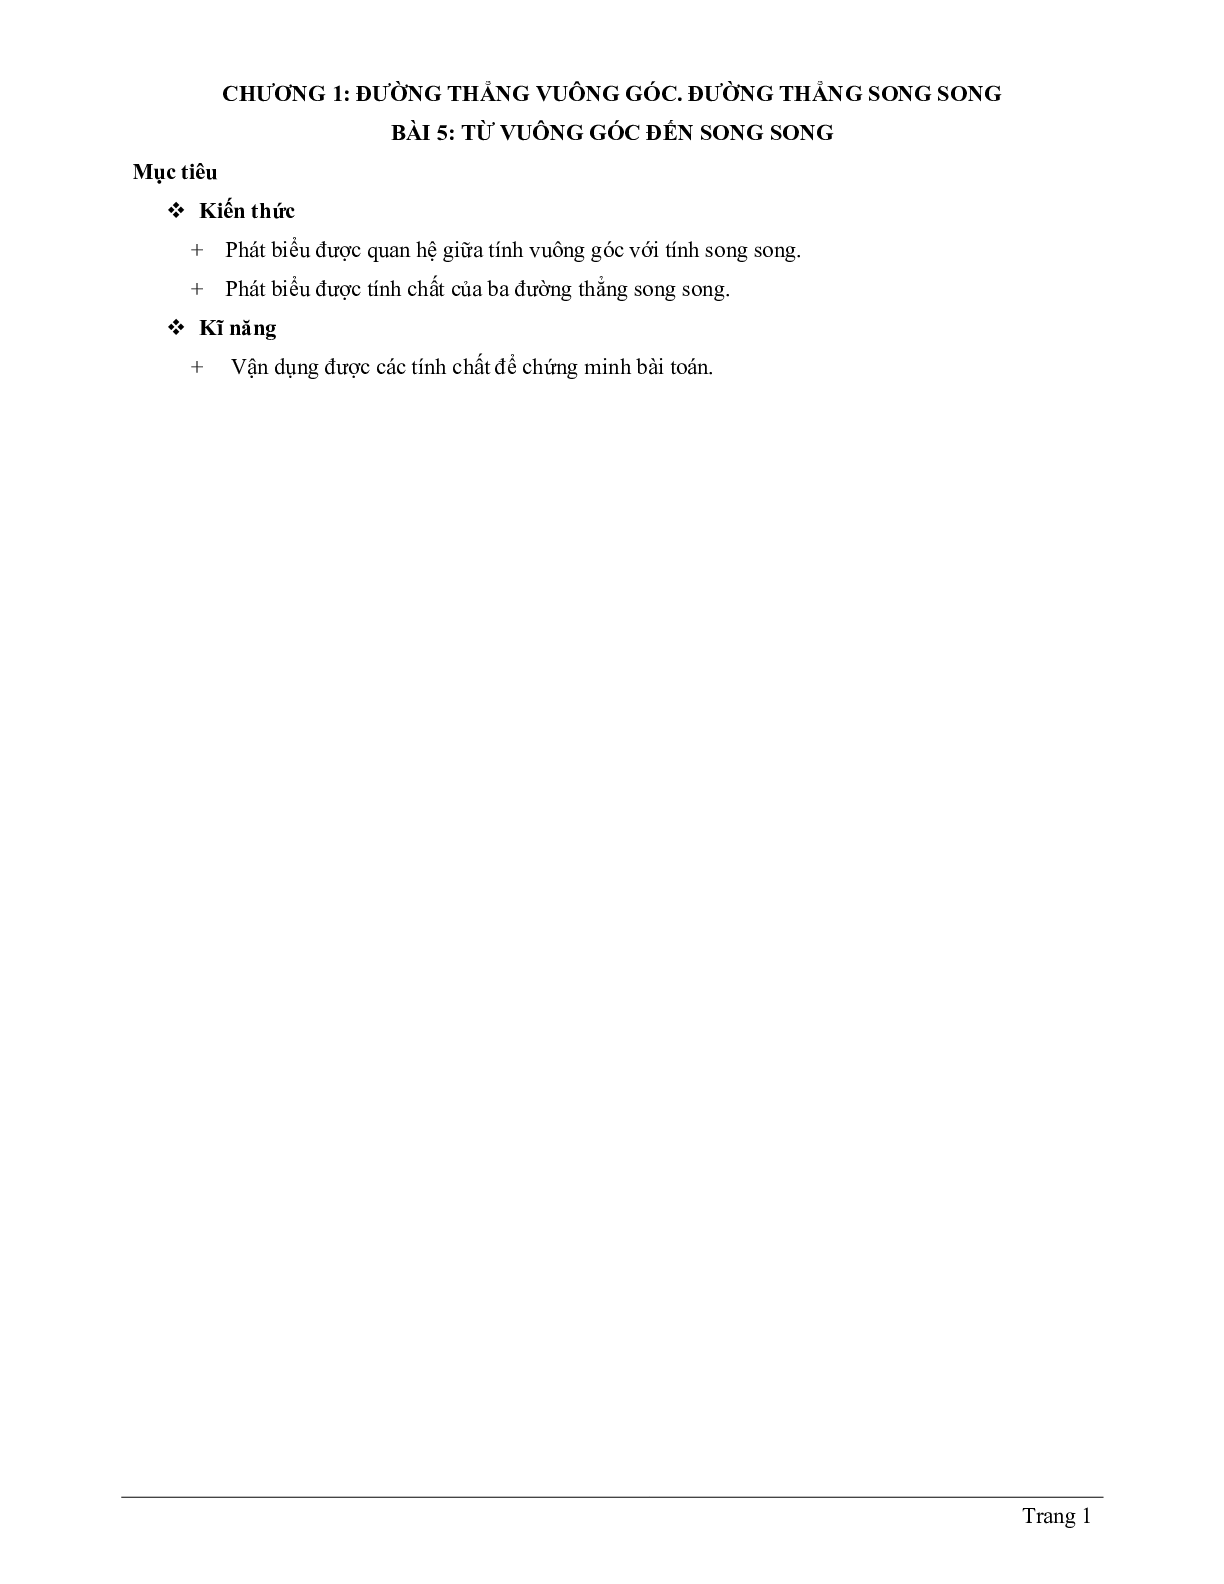 Lý thuyết Toán 7 có đáp án: Từ vuông góc đến song song (trang 1)